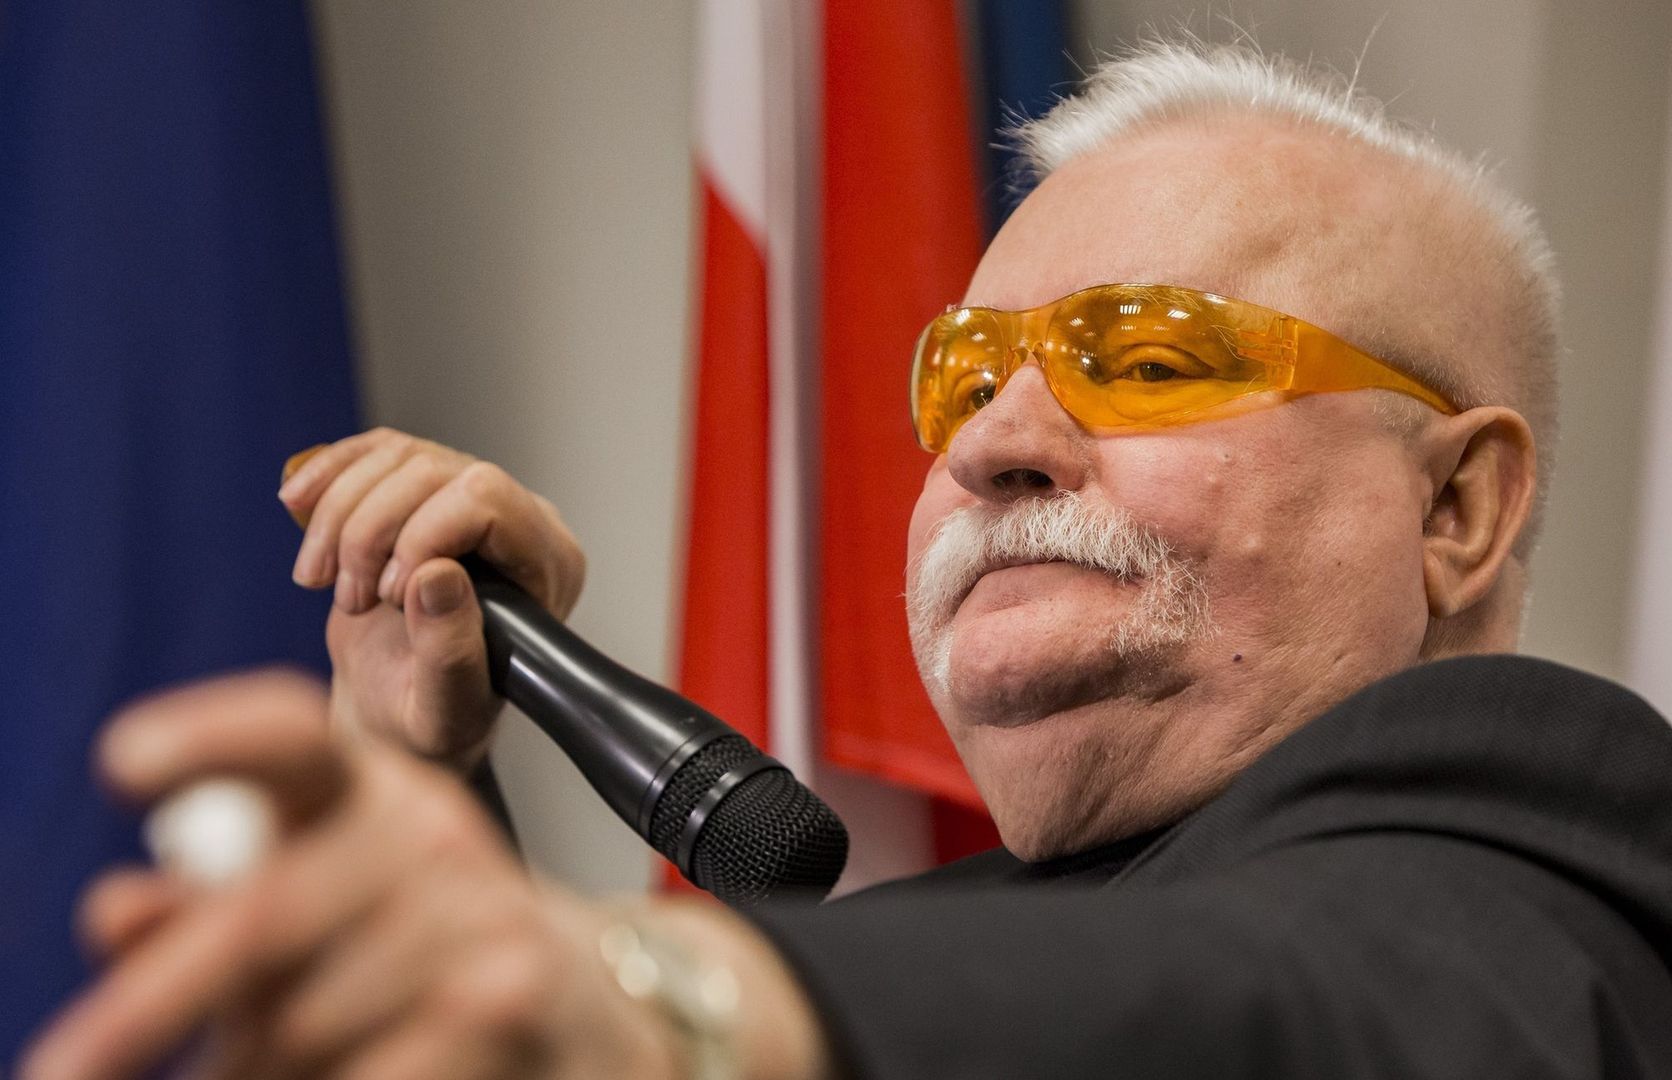 Lech Wałęsa chce rewolucji w UE. Polacy: Nie tędy droga [BADANIE]